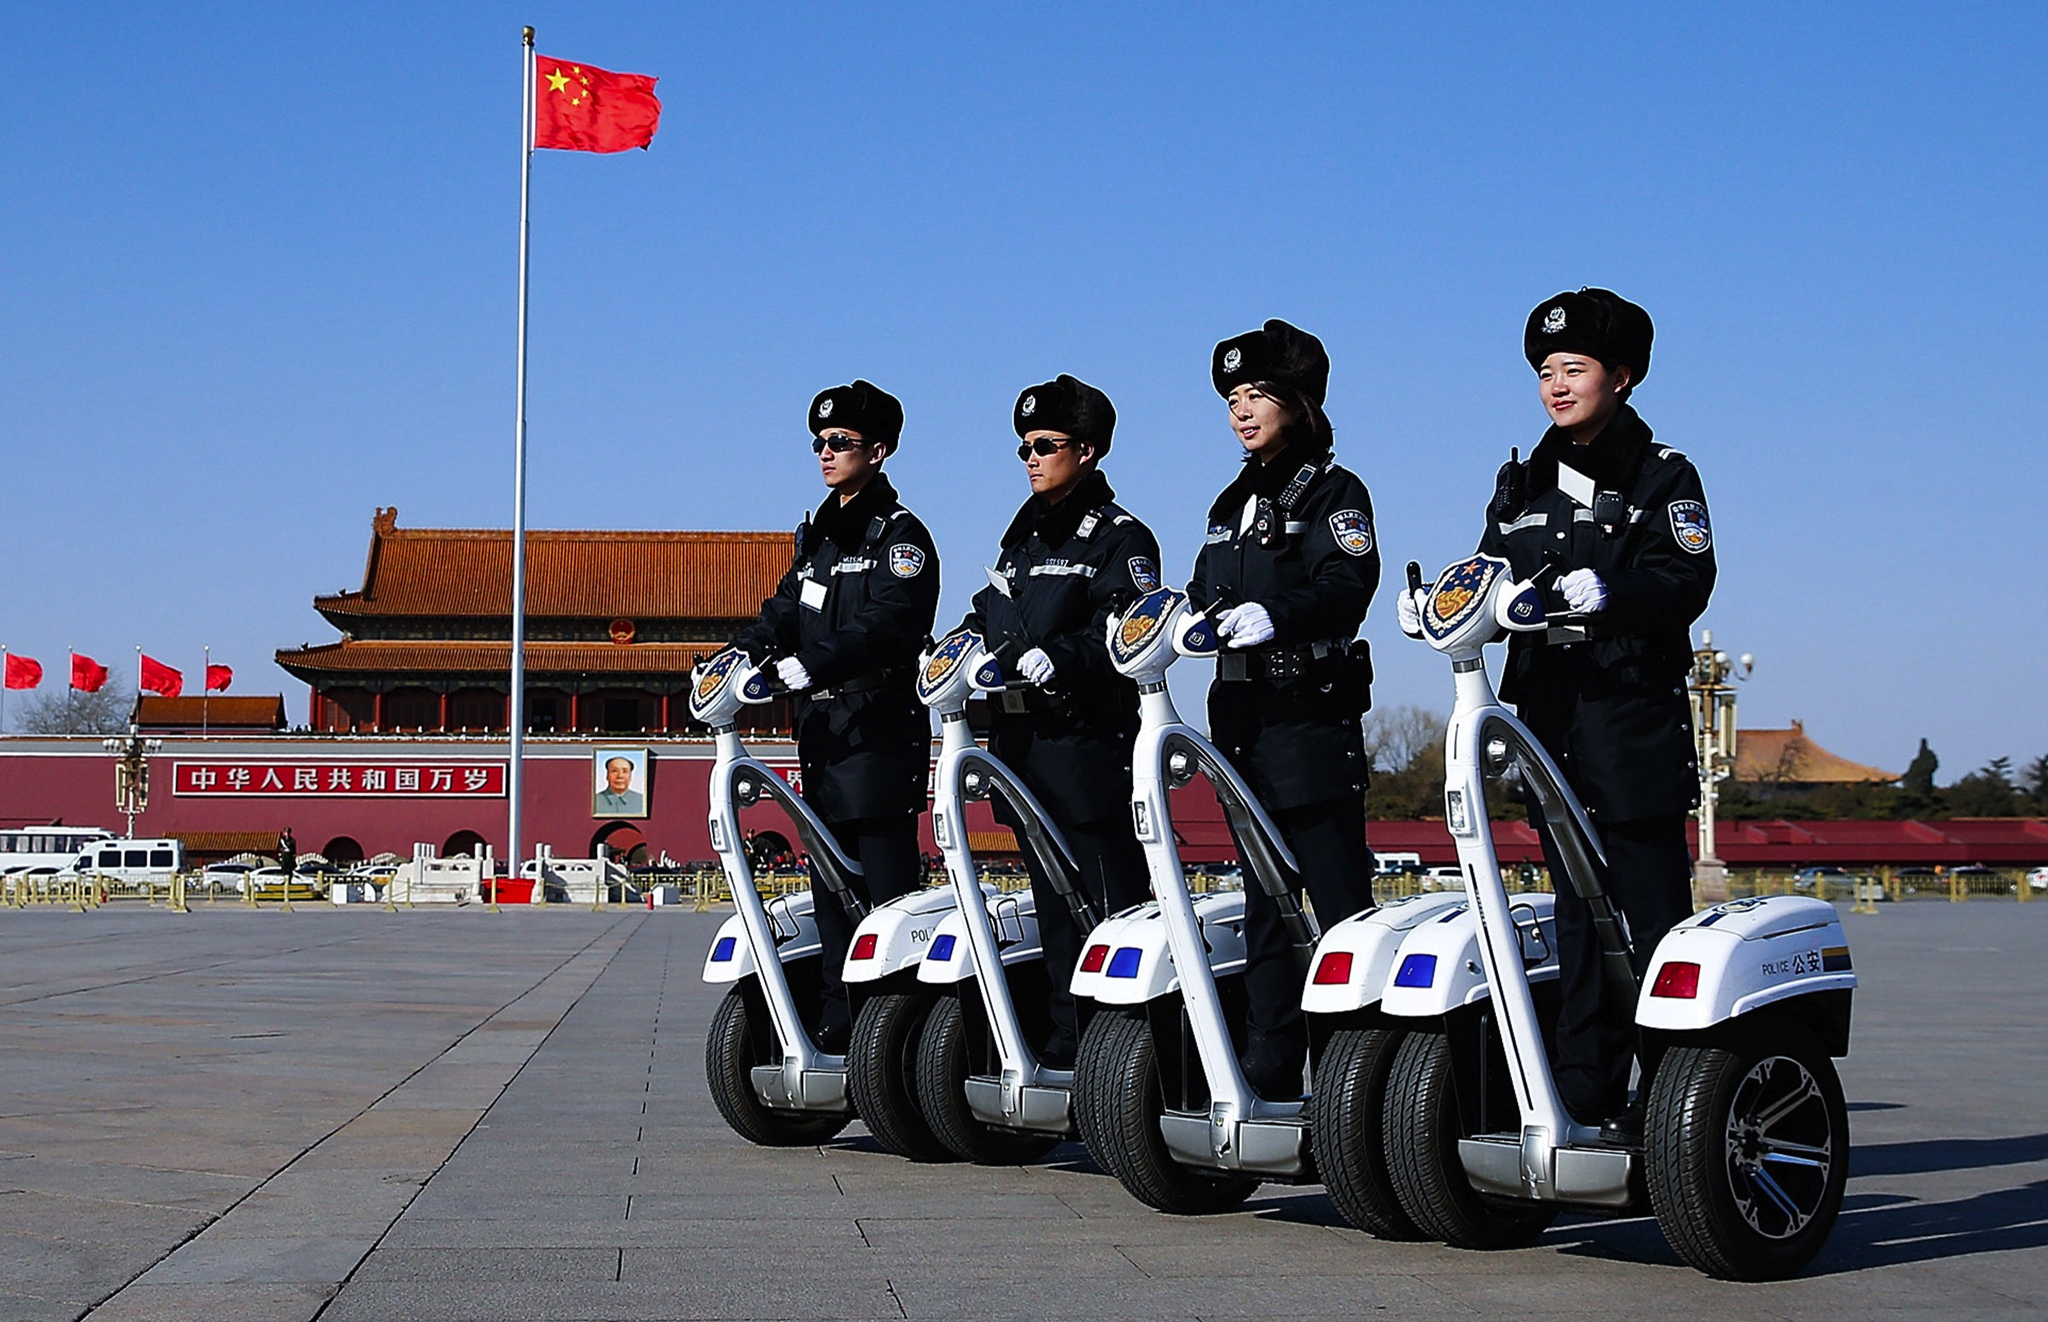 китайская полиция пекин